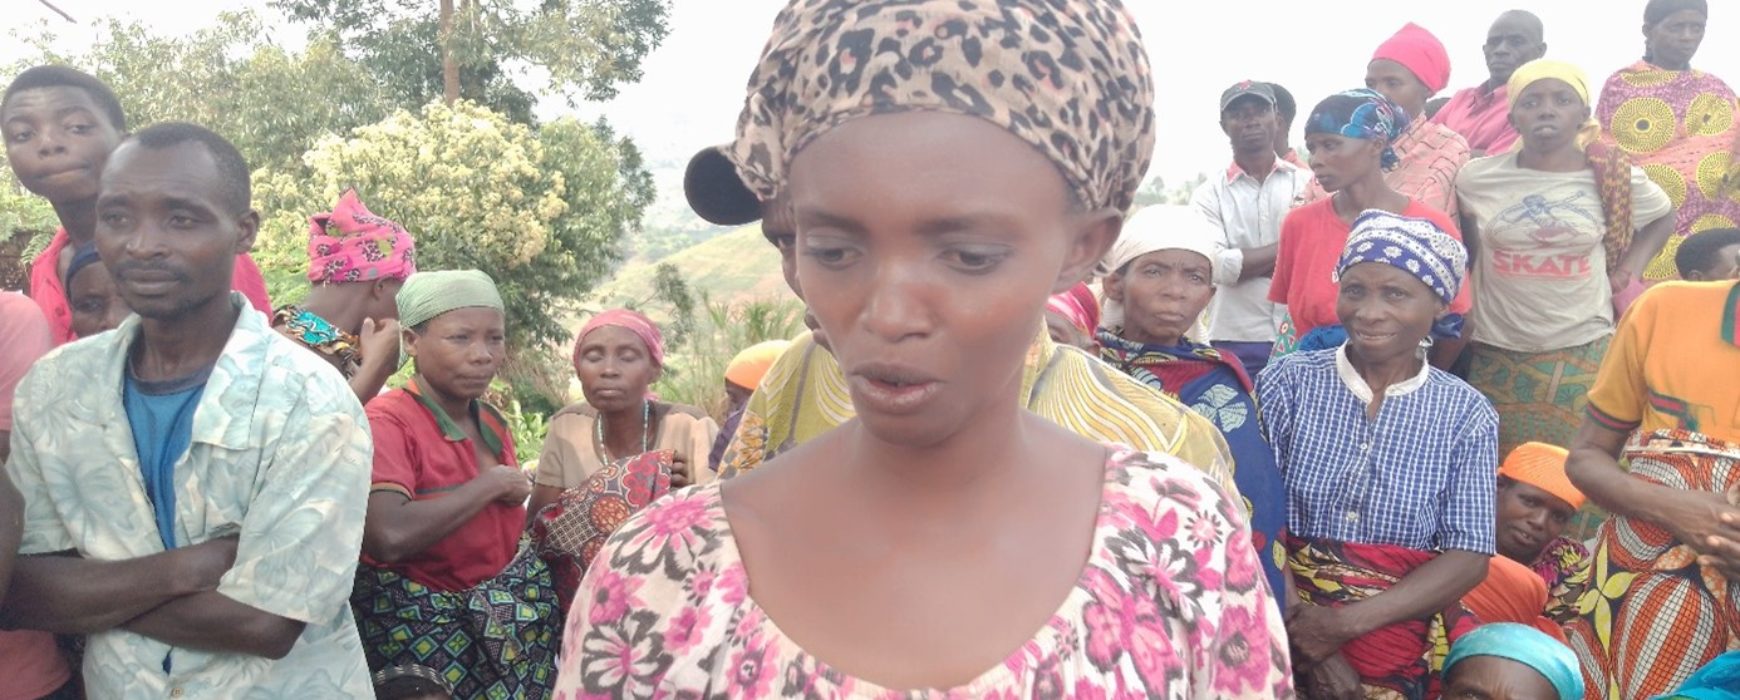 PRRPB: Women and land rights in Burundi